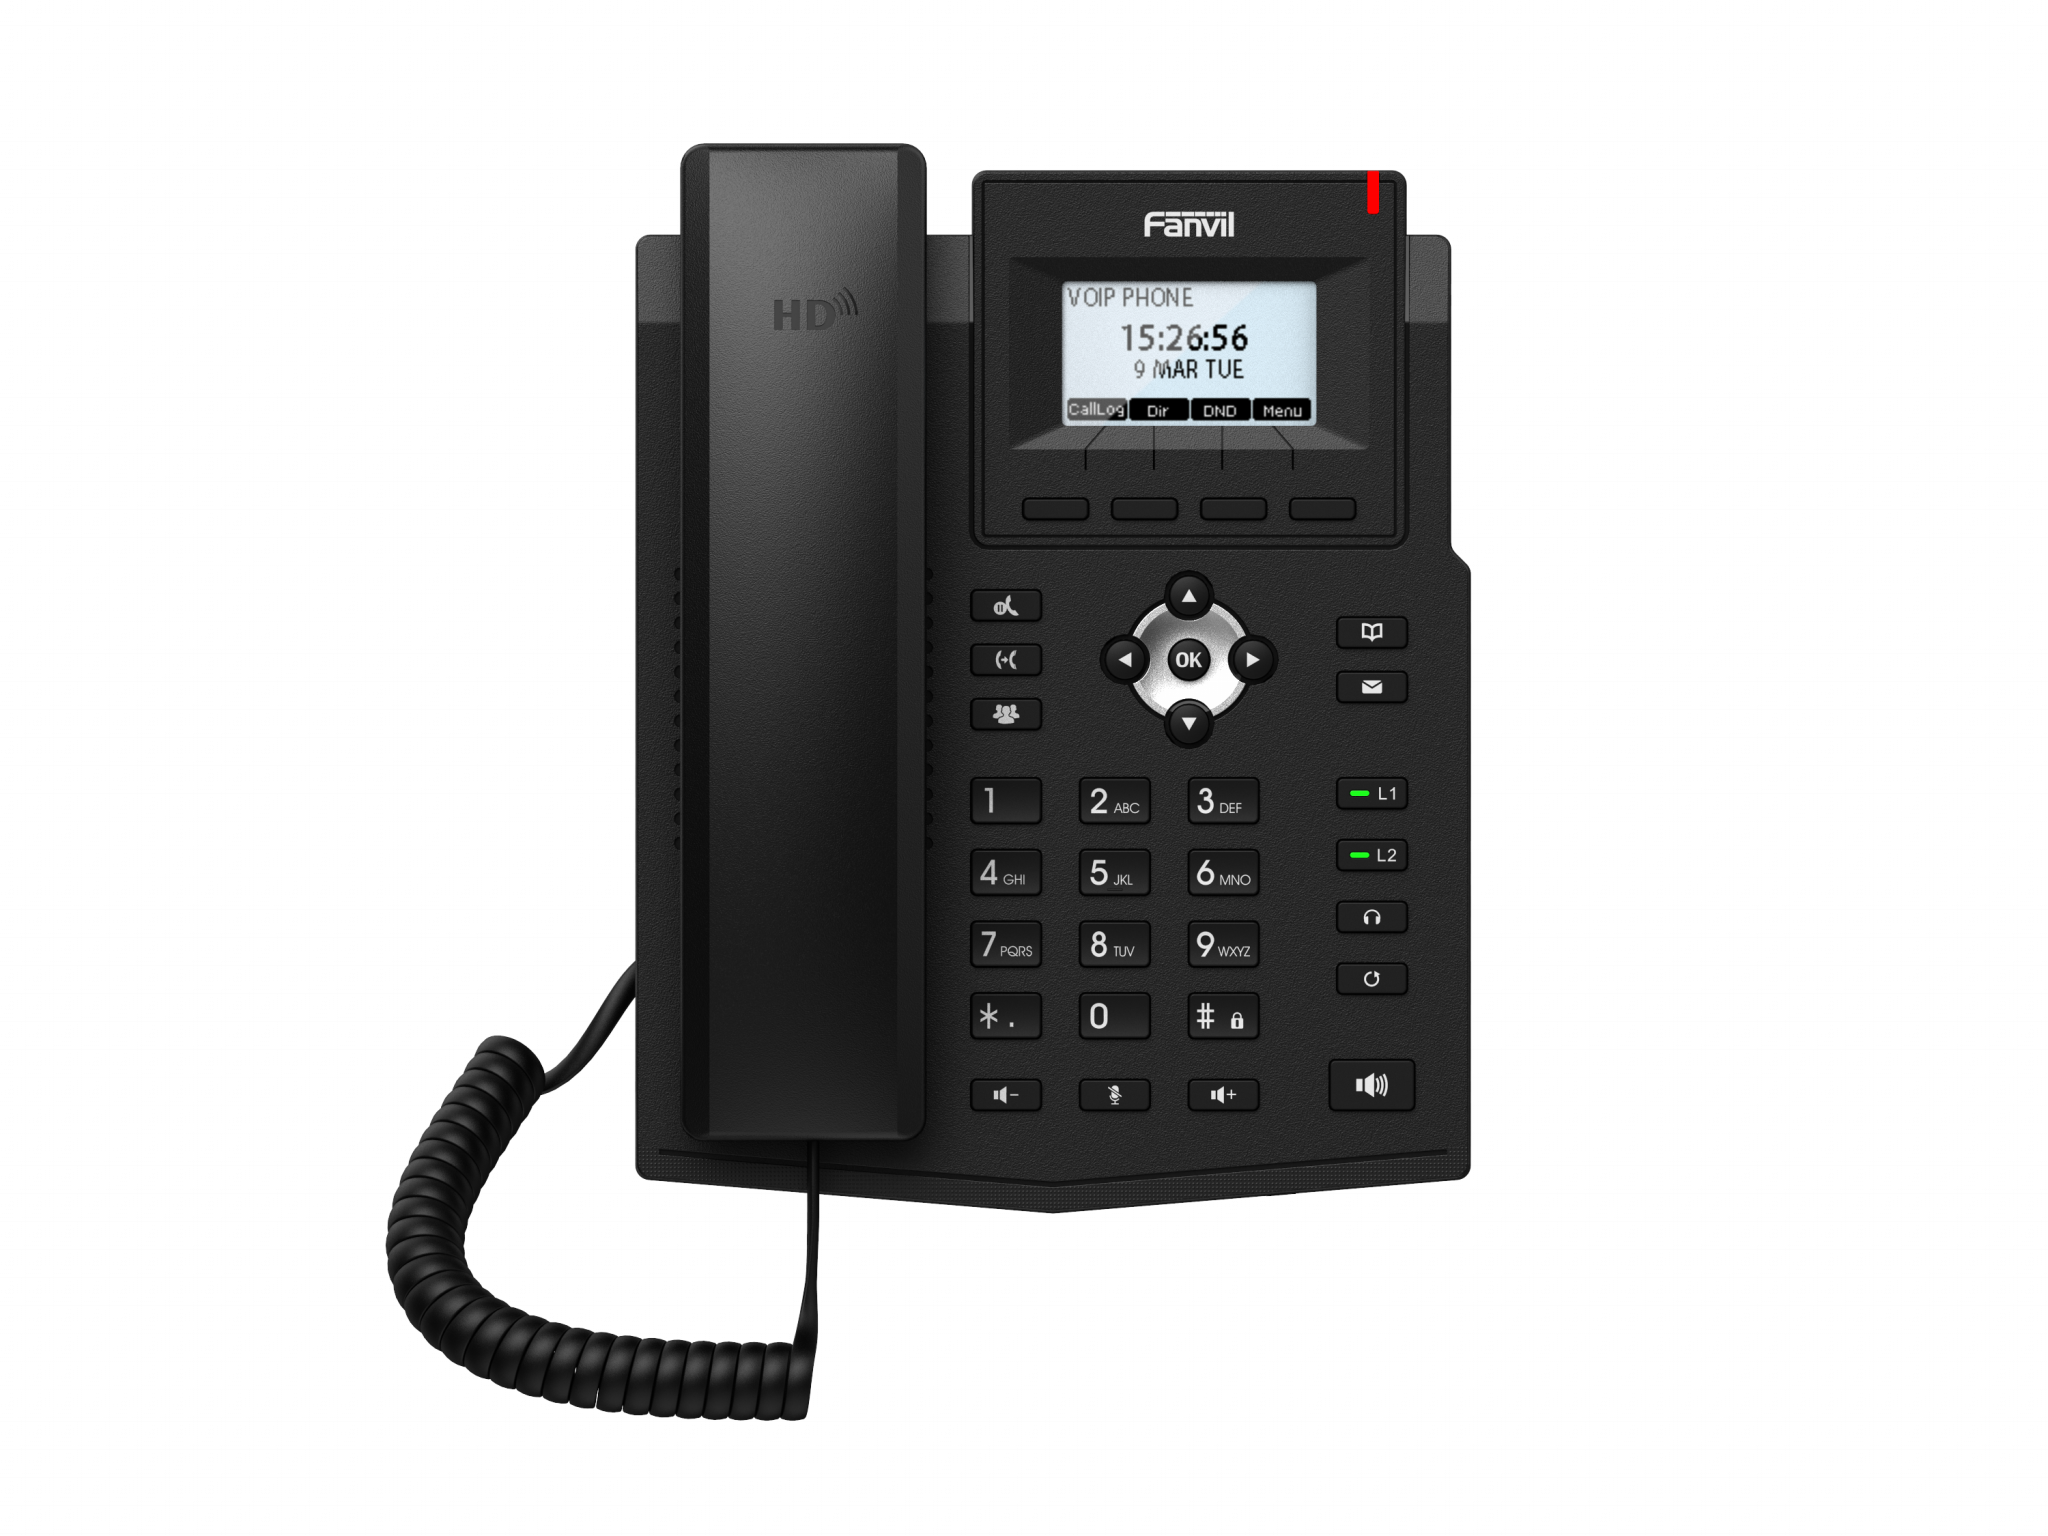 VoIP-телефон Fanvil X3SP Lite, 2 линии, монохромный дисплей, PoE, черный (X3SP LITE)